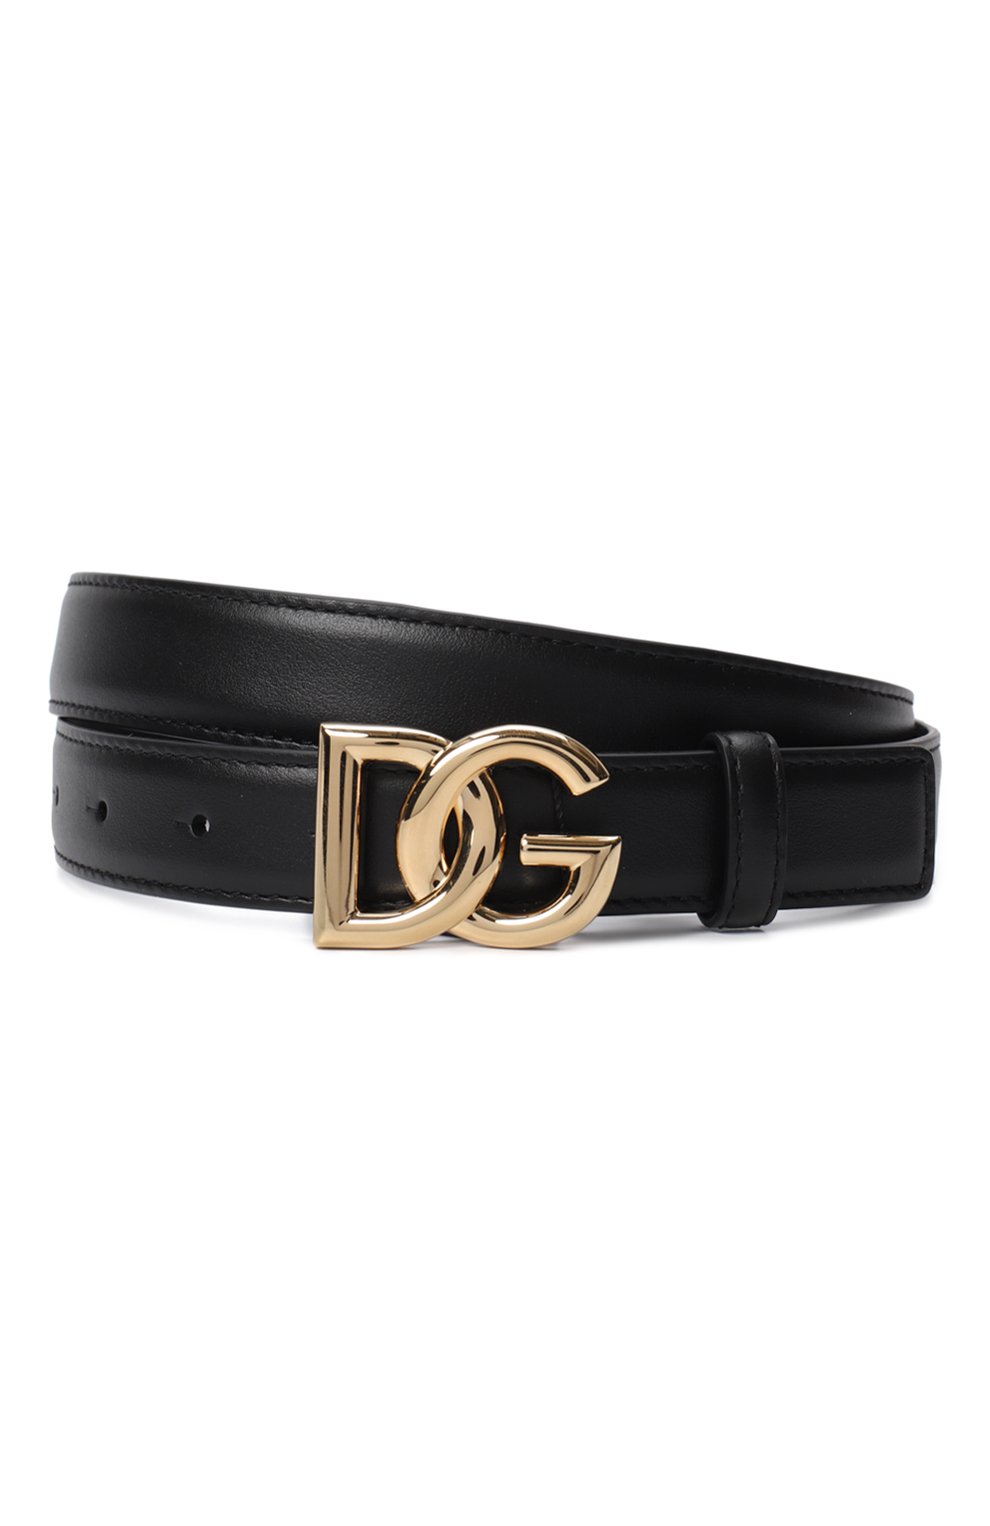 Кожаный ремень | Dolce & Gabbana | Чёрный - 1